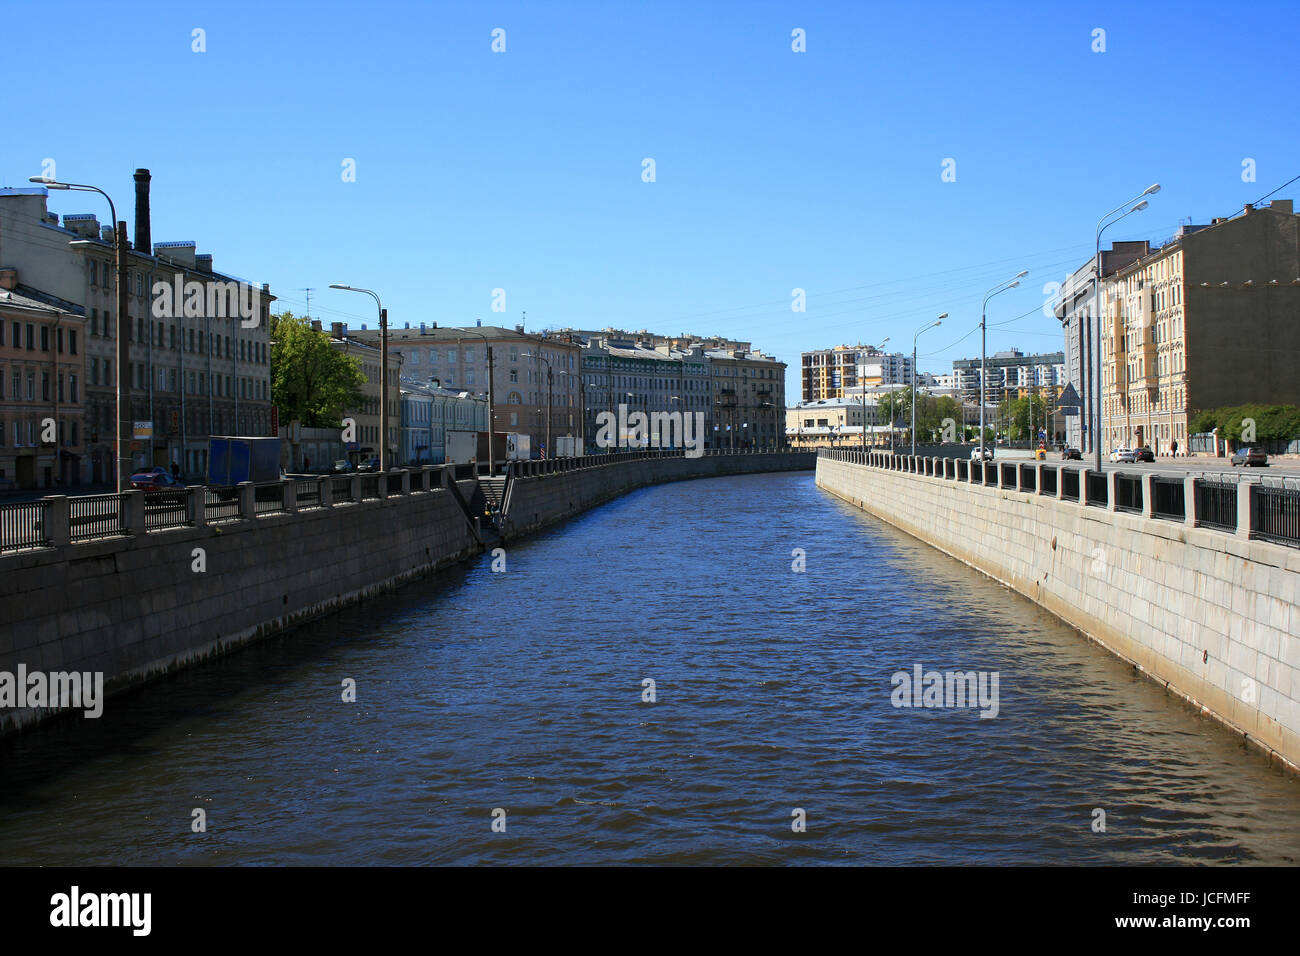 Kanal in Sankt Petersburg - Russland Stockfoto